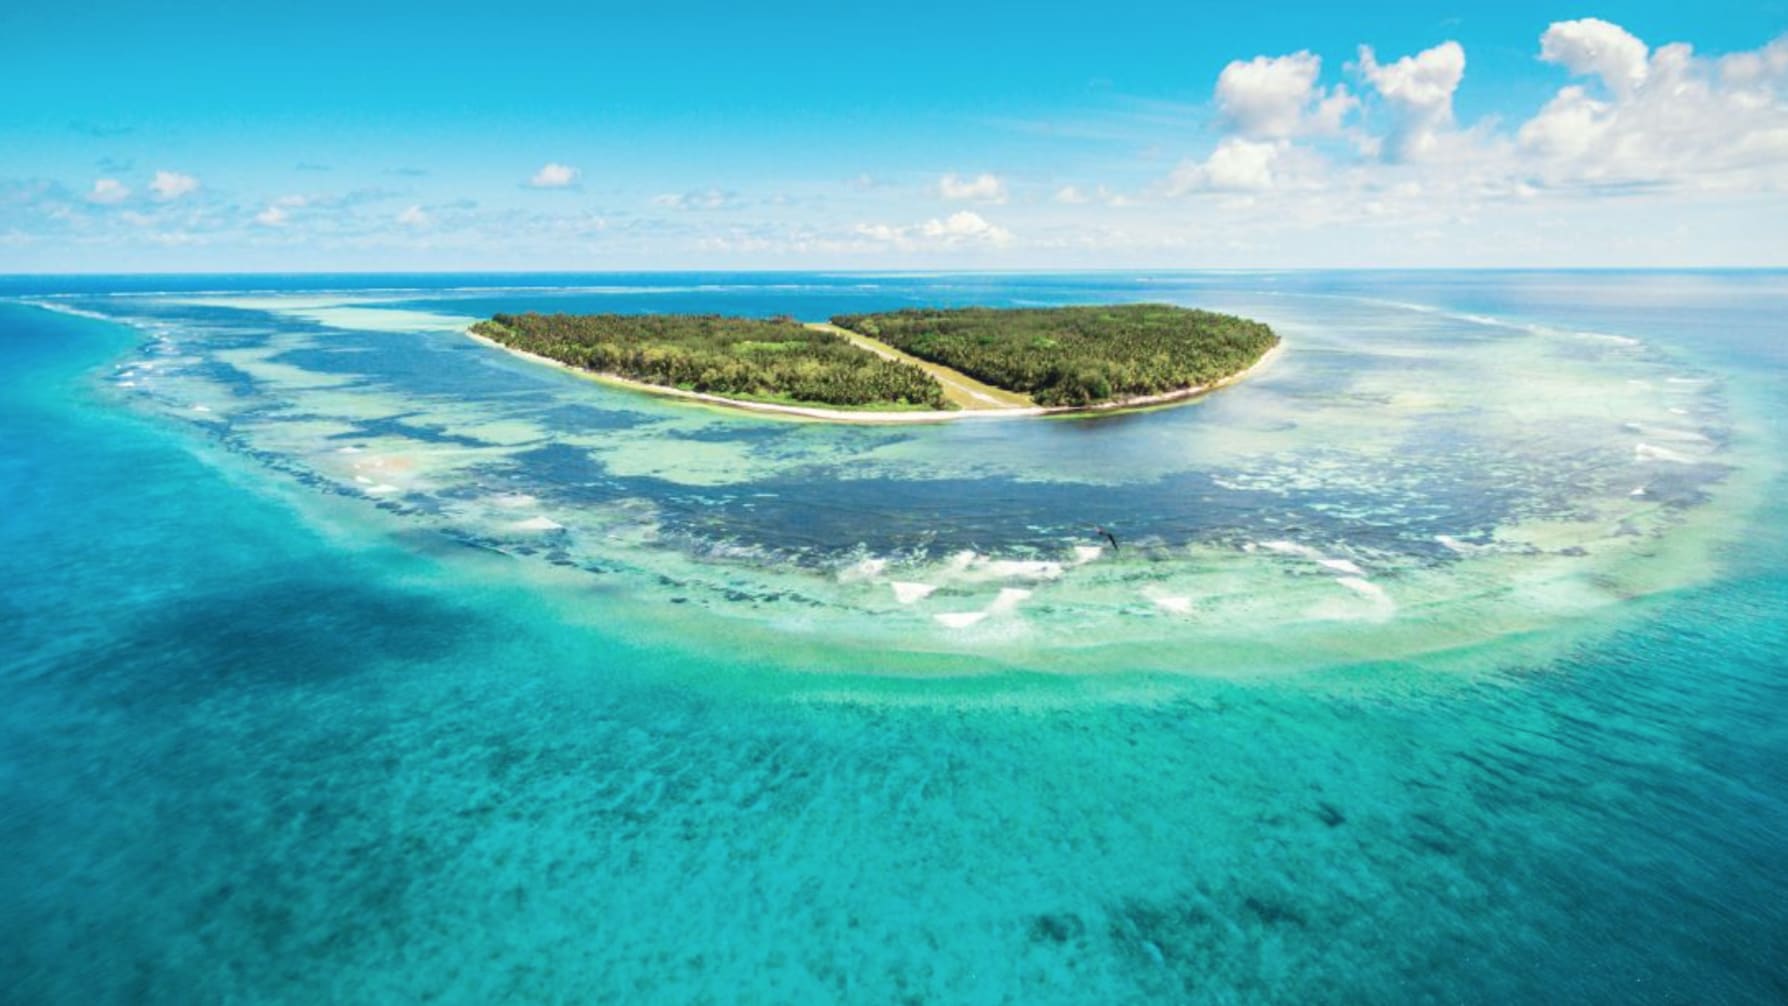 شاهد ما فعلته جزيرة كاريبية صغيرة لإعادة إحياء شعابها المرجانية